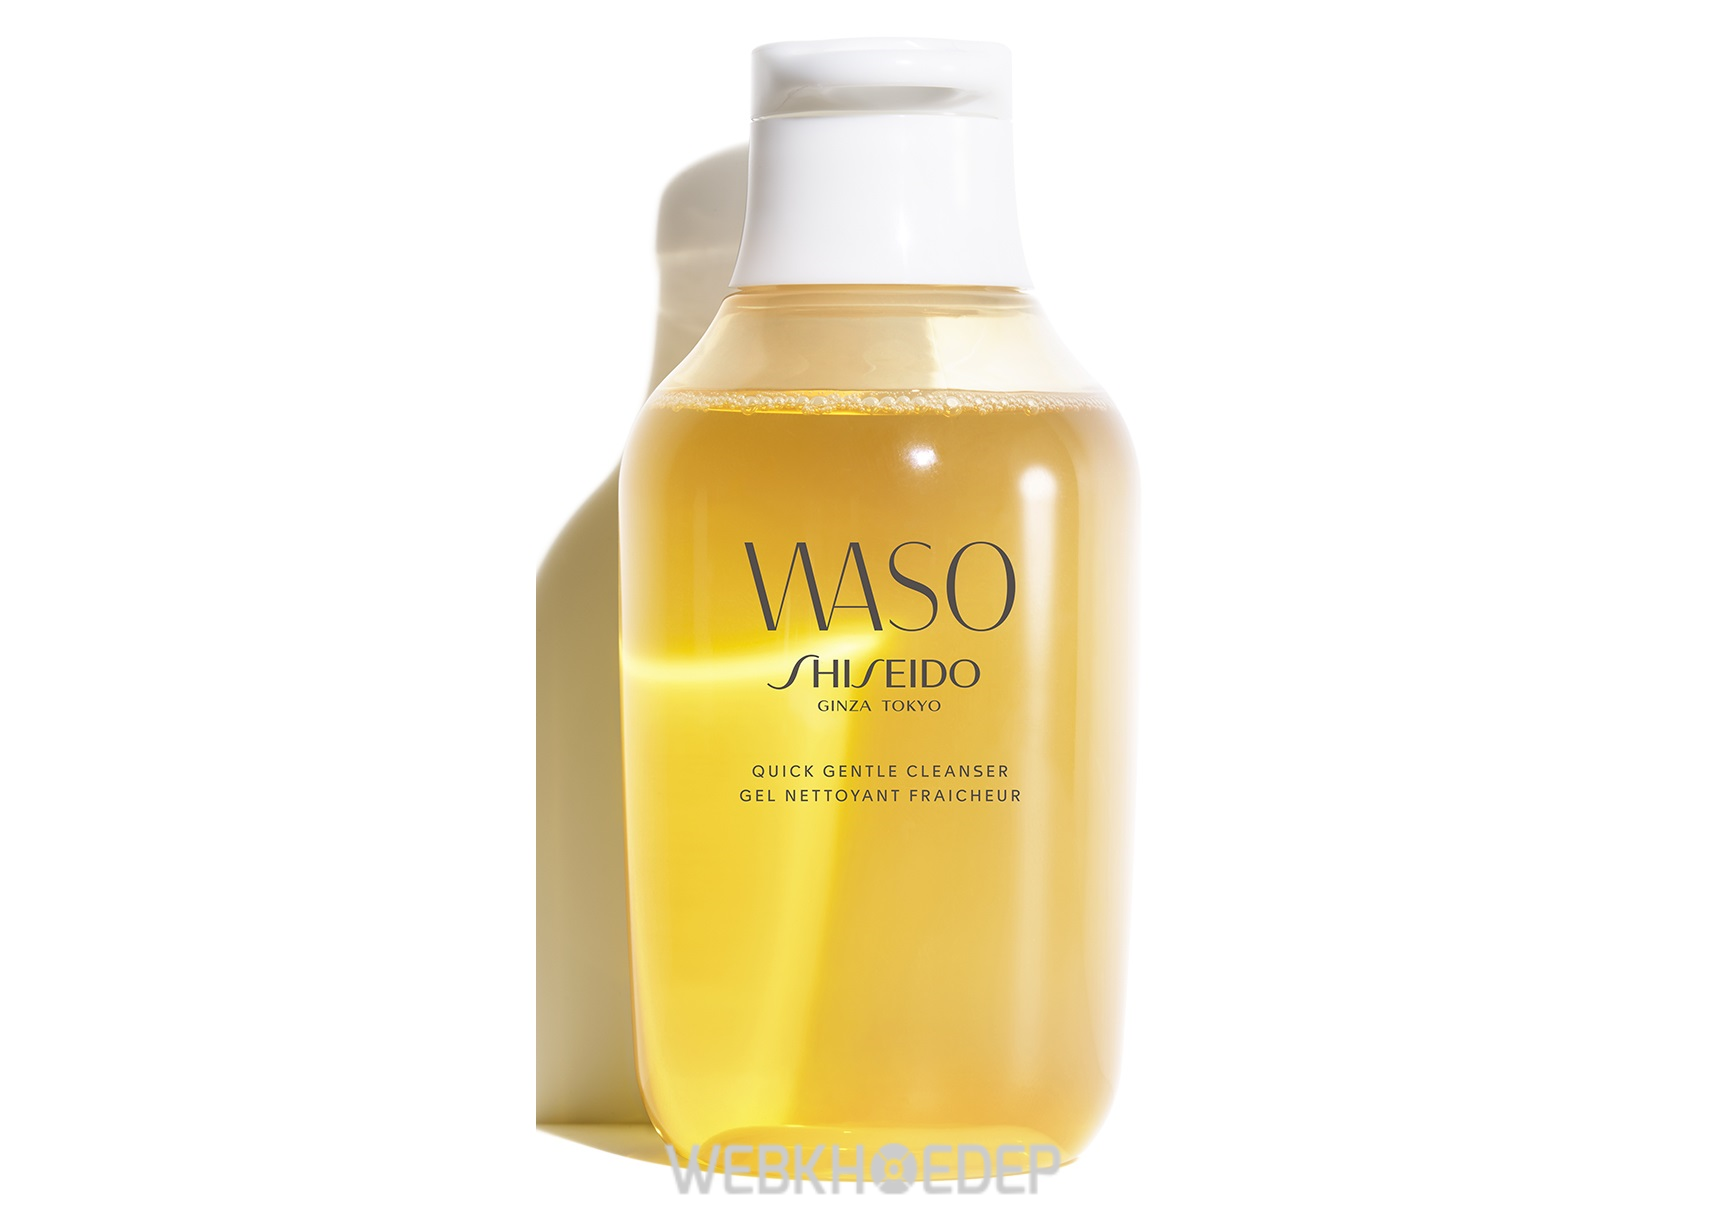 Đi sâu vào bí quyết dưỡng da của dòng sản phẩm WASO Shiseido - Hình 14